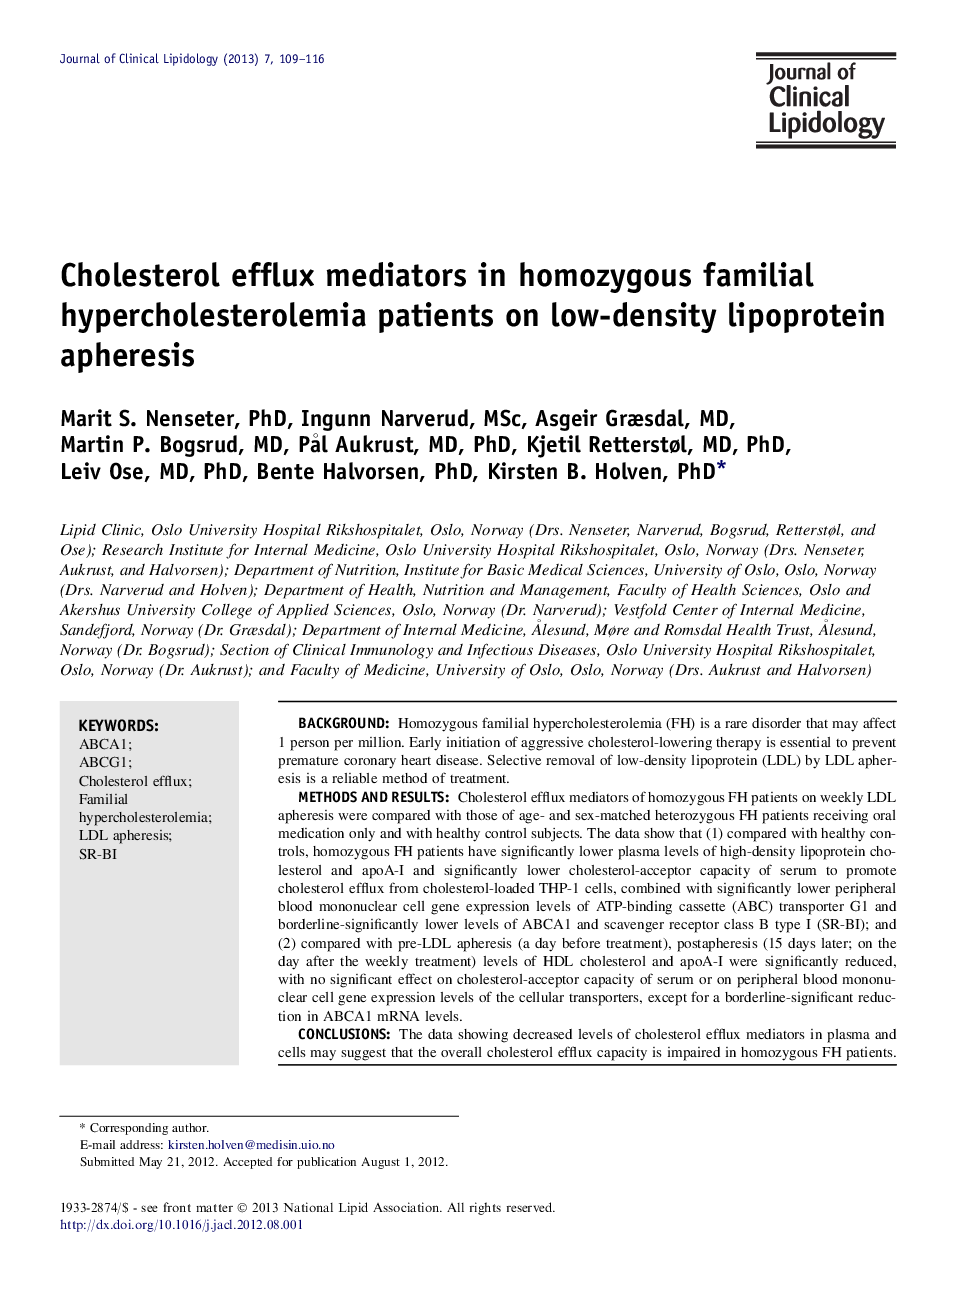 واسطه های فلوکس کلسترول در بیماران مبتلا به هیپوکلسترولیمی فامیلی هموزیگوت مبتلایان به افسردگی لیپوپروتئین با چگالی کم 